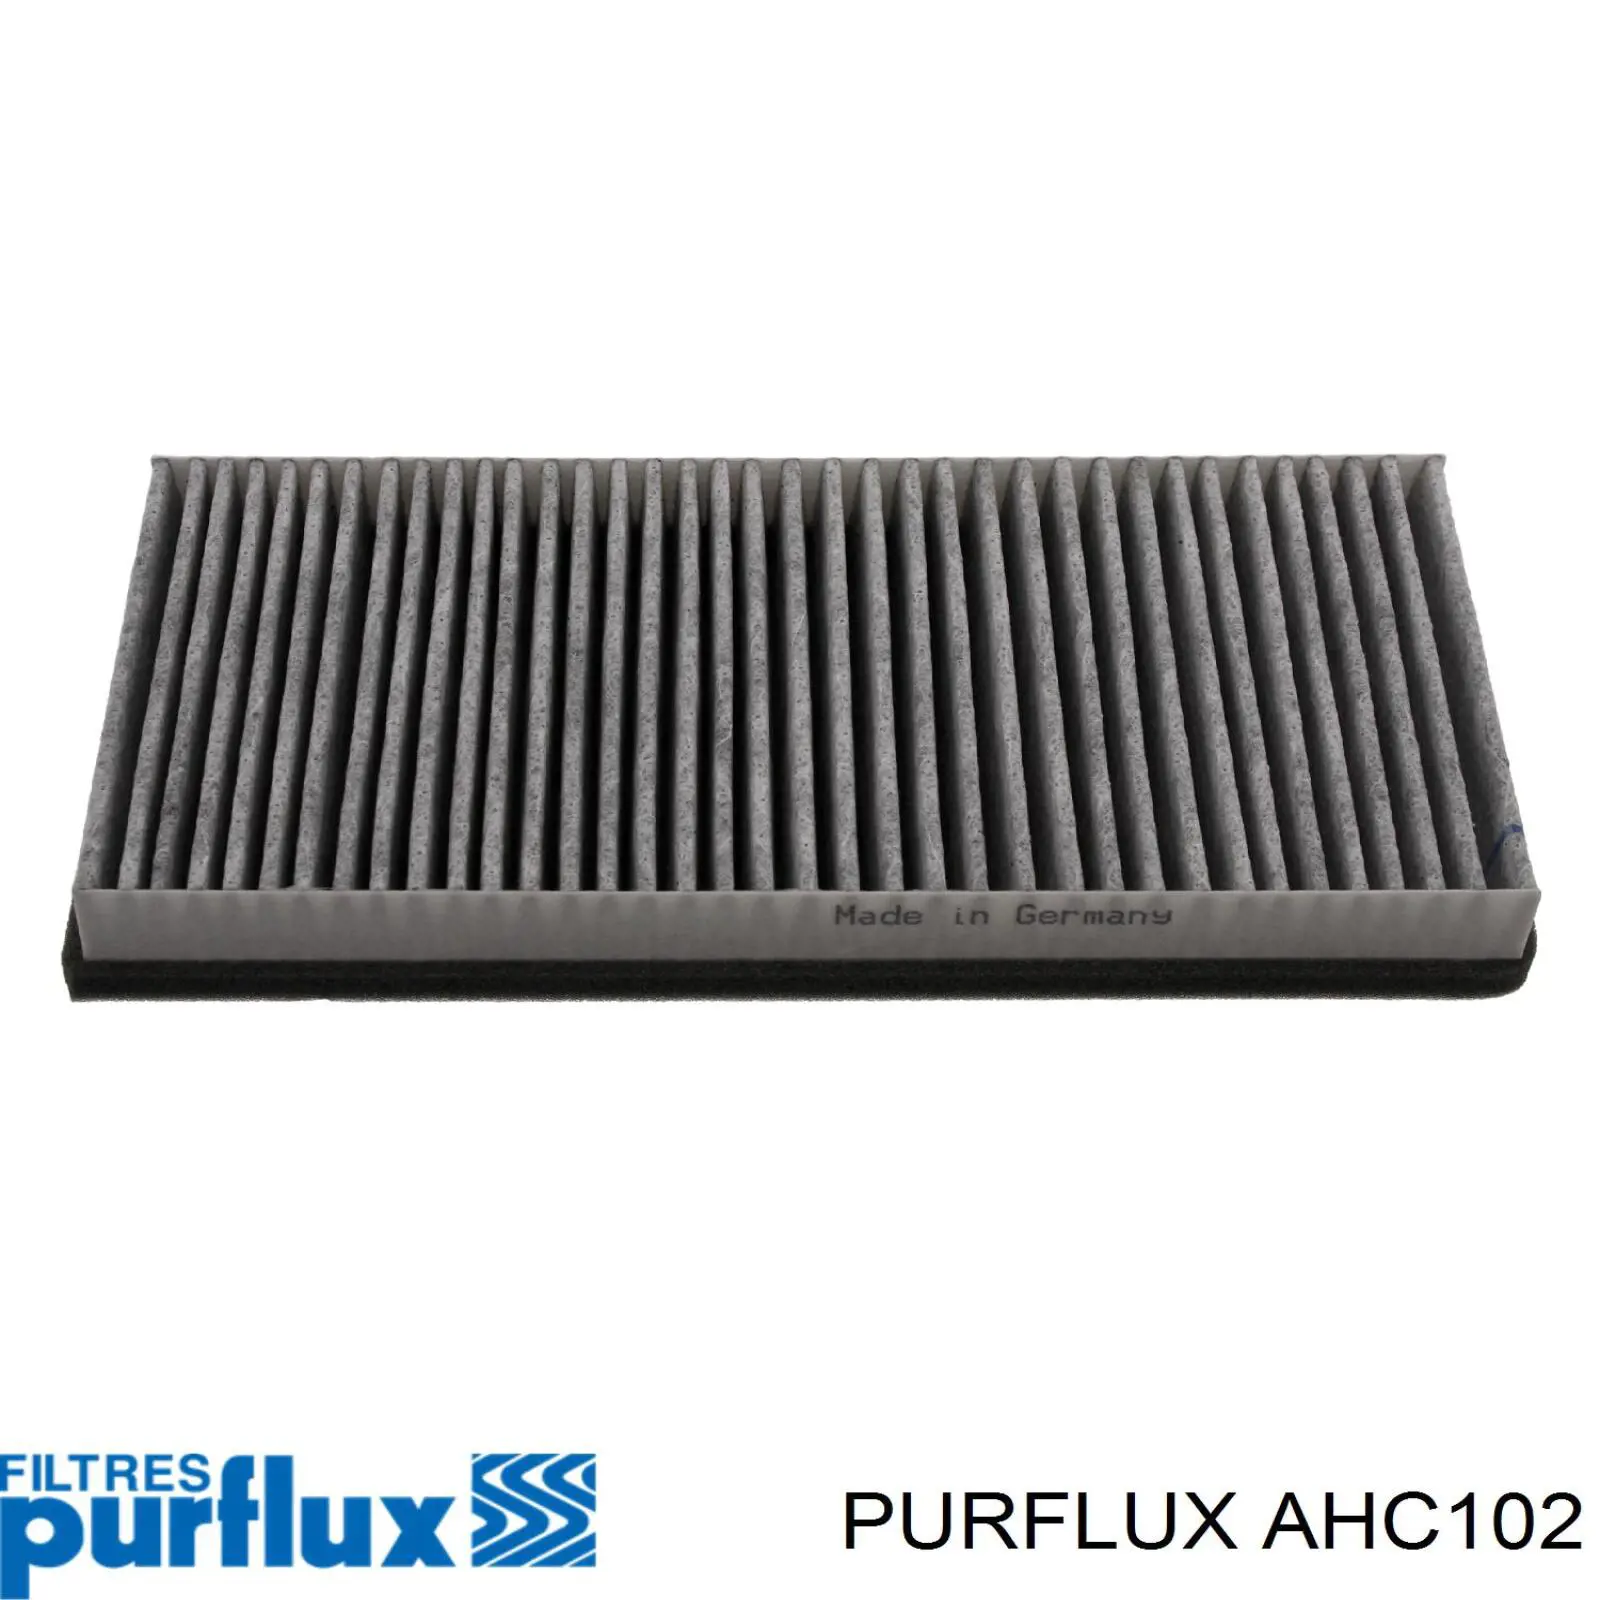 AHC102 Purflux filtro habitáculo